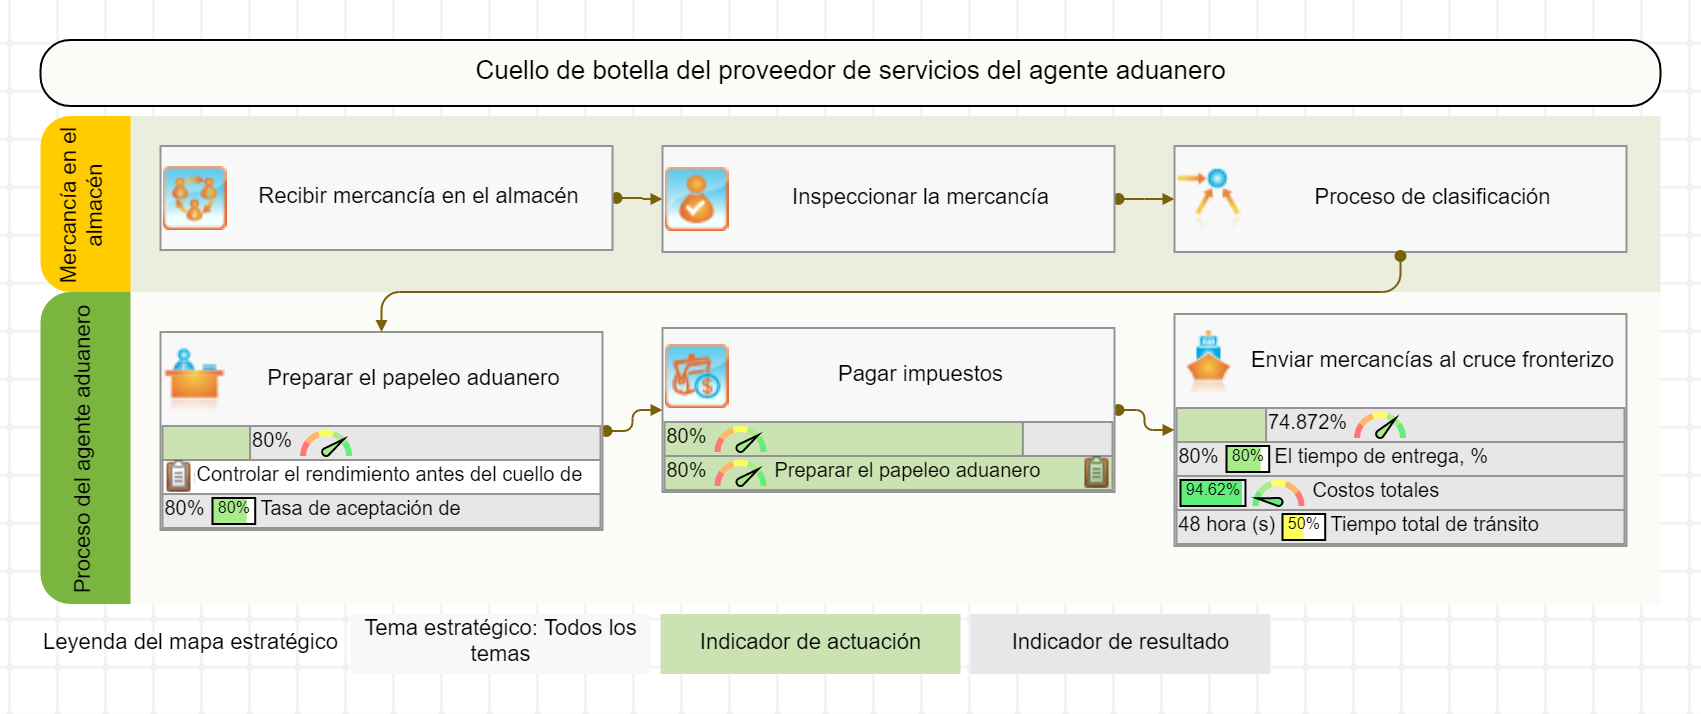 Procesar mapa para el cuello de botella del proveedor de servicios del agente aduanero